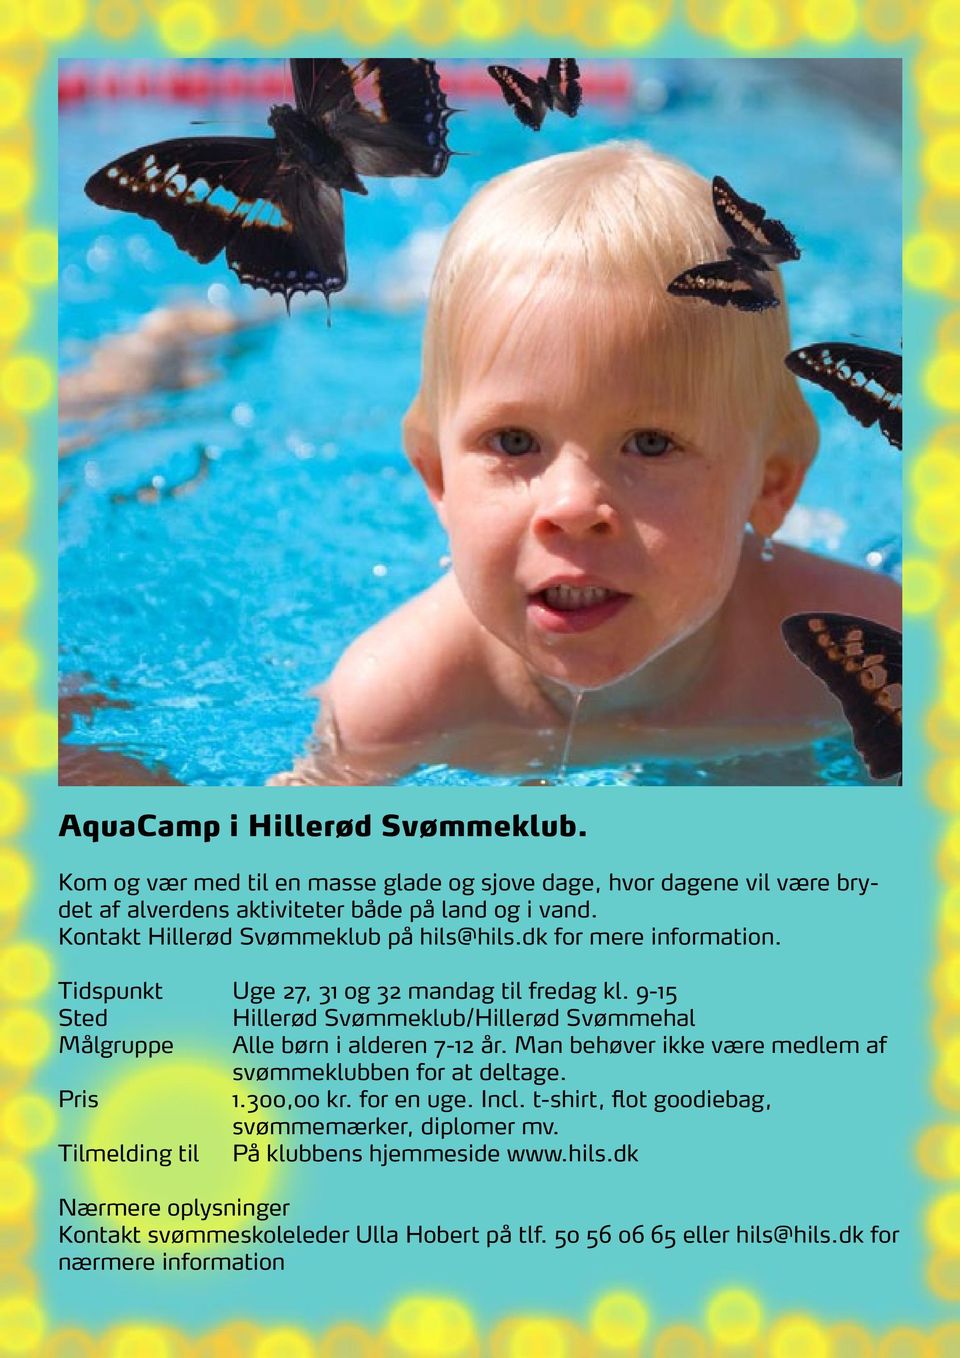 9-15 Hillerød Svømmeklub/Hillerød Svømmehal Målgruppe Alle børn i alderen 7-12 år. Man behøver ikke være medlem af svømmeklubben for at deltage. 1.300,00 kr.